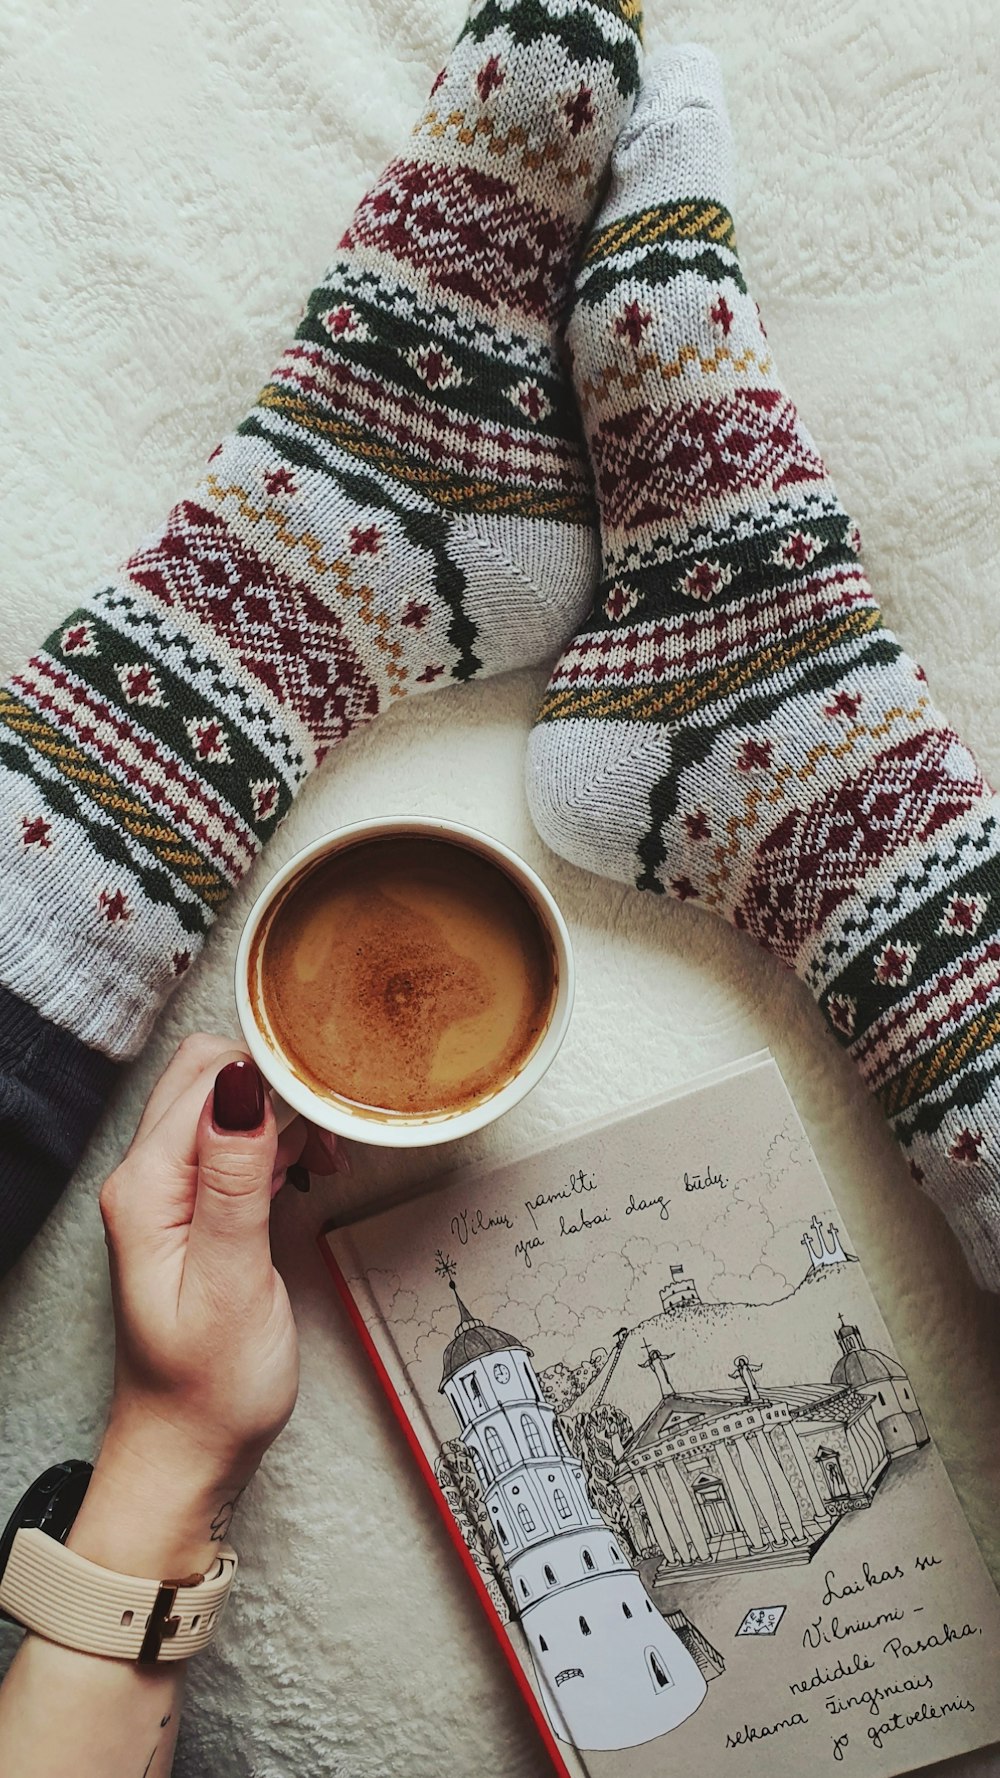 una persona sosteniendo una taza de café junto a un libro